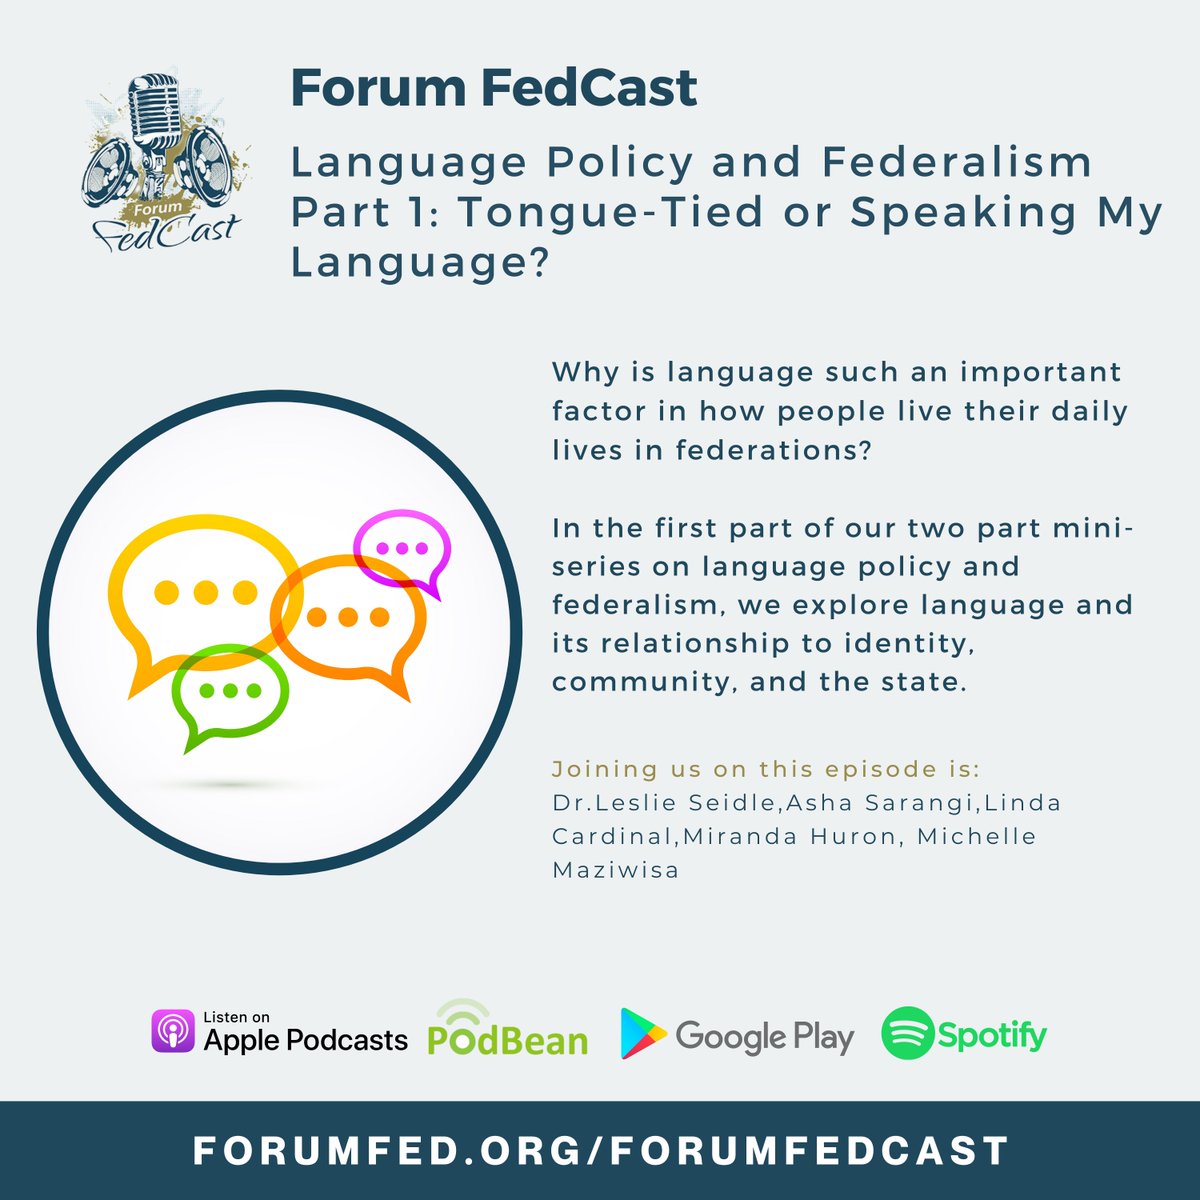 NEW Forum FedCast Episode!🎙️ 𝐋𝐚𝐧𝐠𝐮𝐚𝐠𝐞 𝐏𝐨𝐥𝐢𝐜𝐲 𝐚𝐧𝐝 𝐅𝐞𝐝𝐞𝐫𝐚𝐥𝐢𝐬𝐦 𝐏𝐚𝐫𝐭 𝟏: 𝐓𝐨𝐧𝐠𝐮𝐞-𝐓𝐢𝐞𝐝 𝐨𝐫 𝐒𝐩𝐞𝐚𝐤𝐢𝐧𝐠 𝐌𝐲 𝐋𝐚𝐧𝐠𝐮𝐚𝐠𝐞?💬 Joining us on this episode: Leslie Seidle, Asha Sarangi @LindaCardinal, @m_huron ➡️forumfedcast.podbean.com